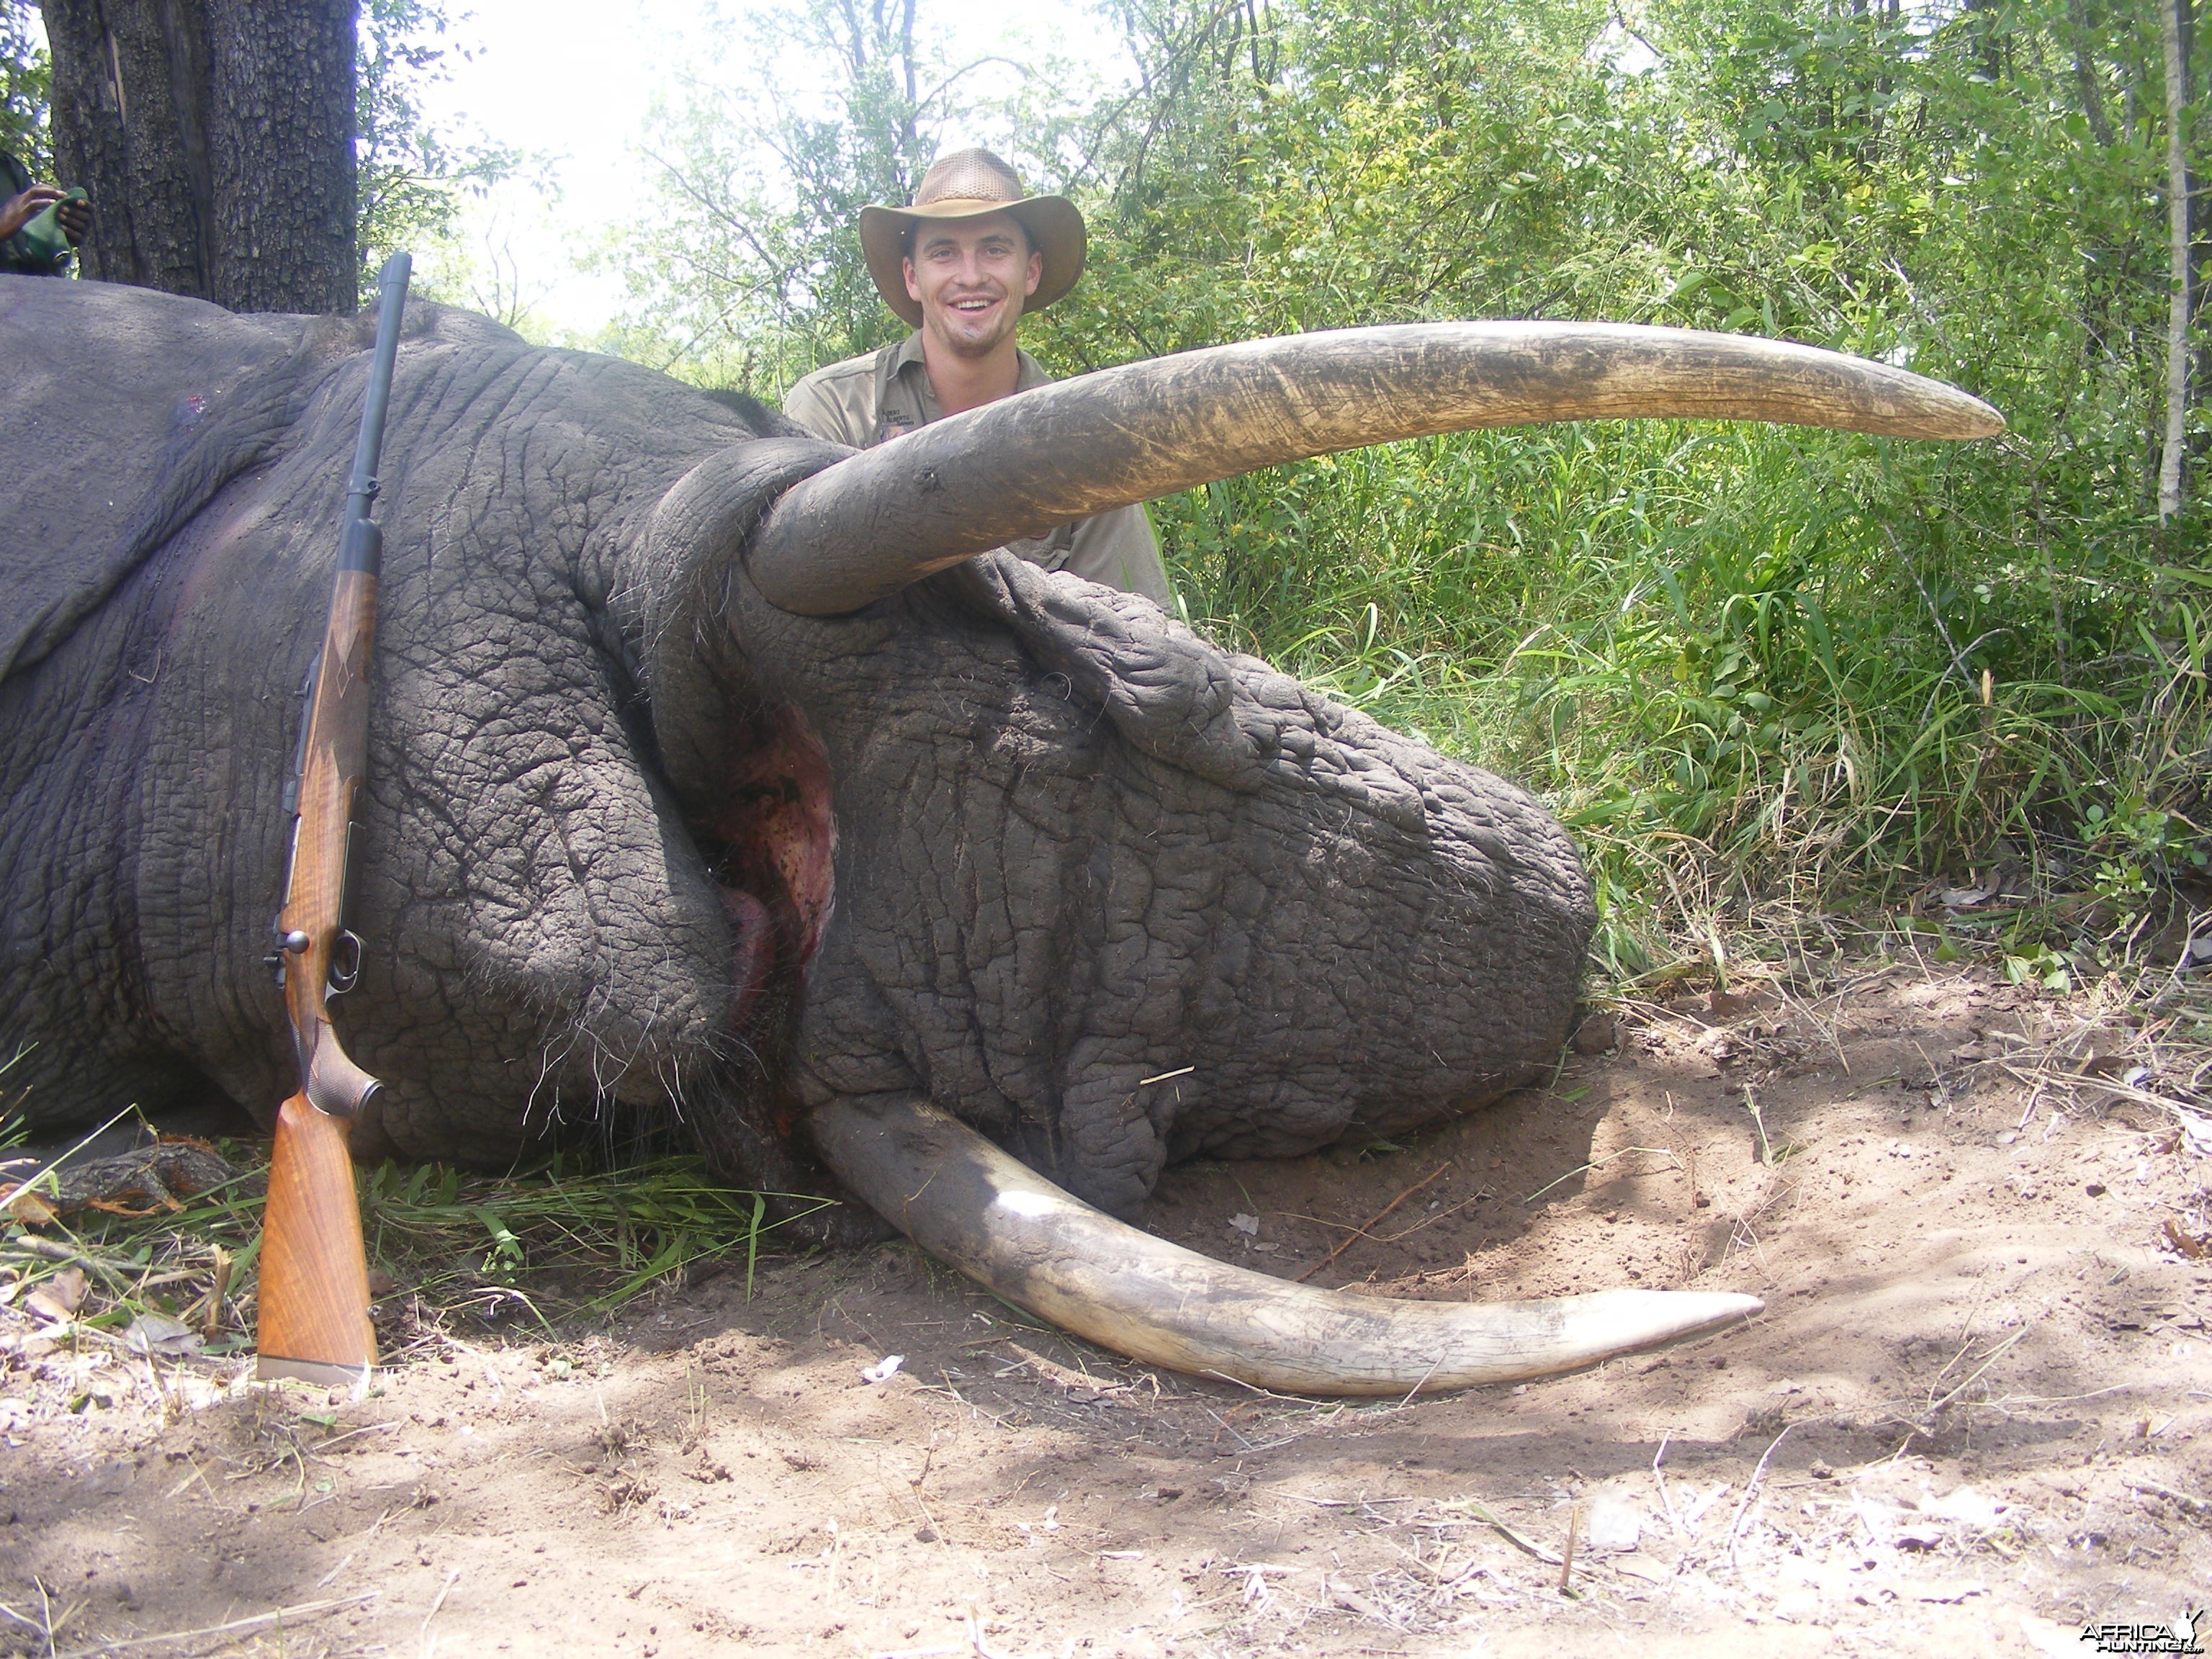 2011 elephant hunt Zimbabwe